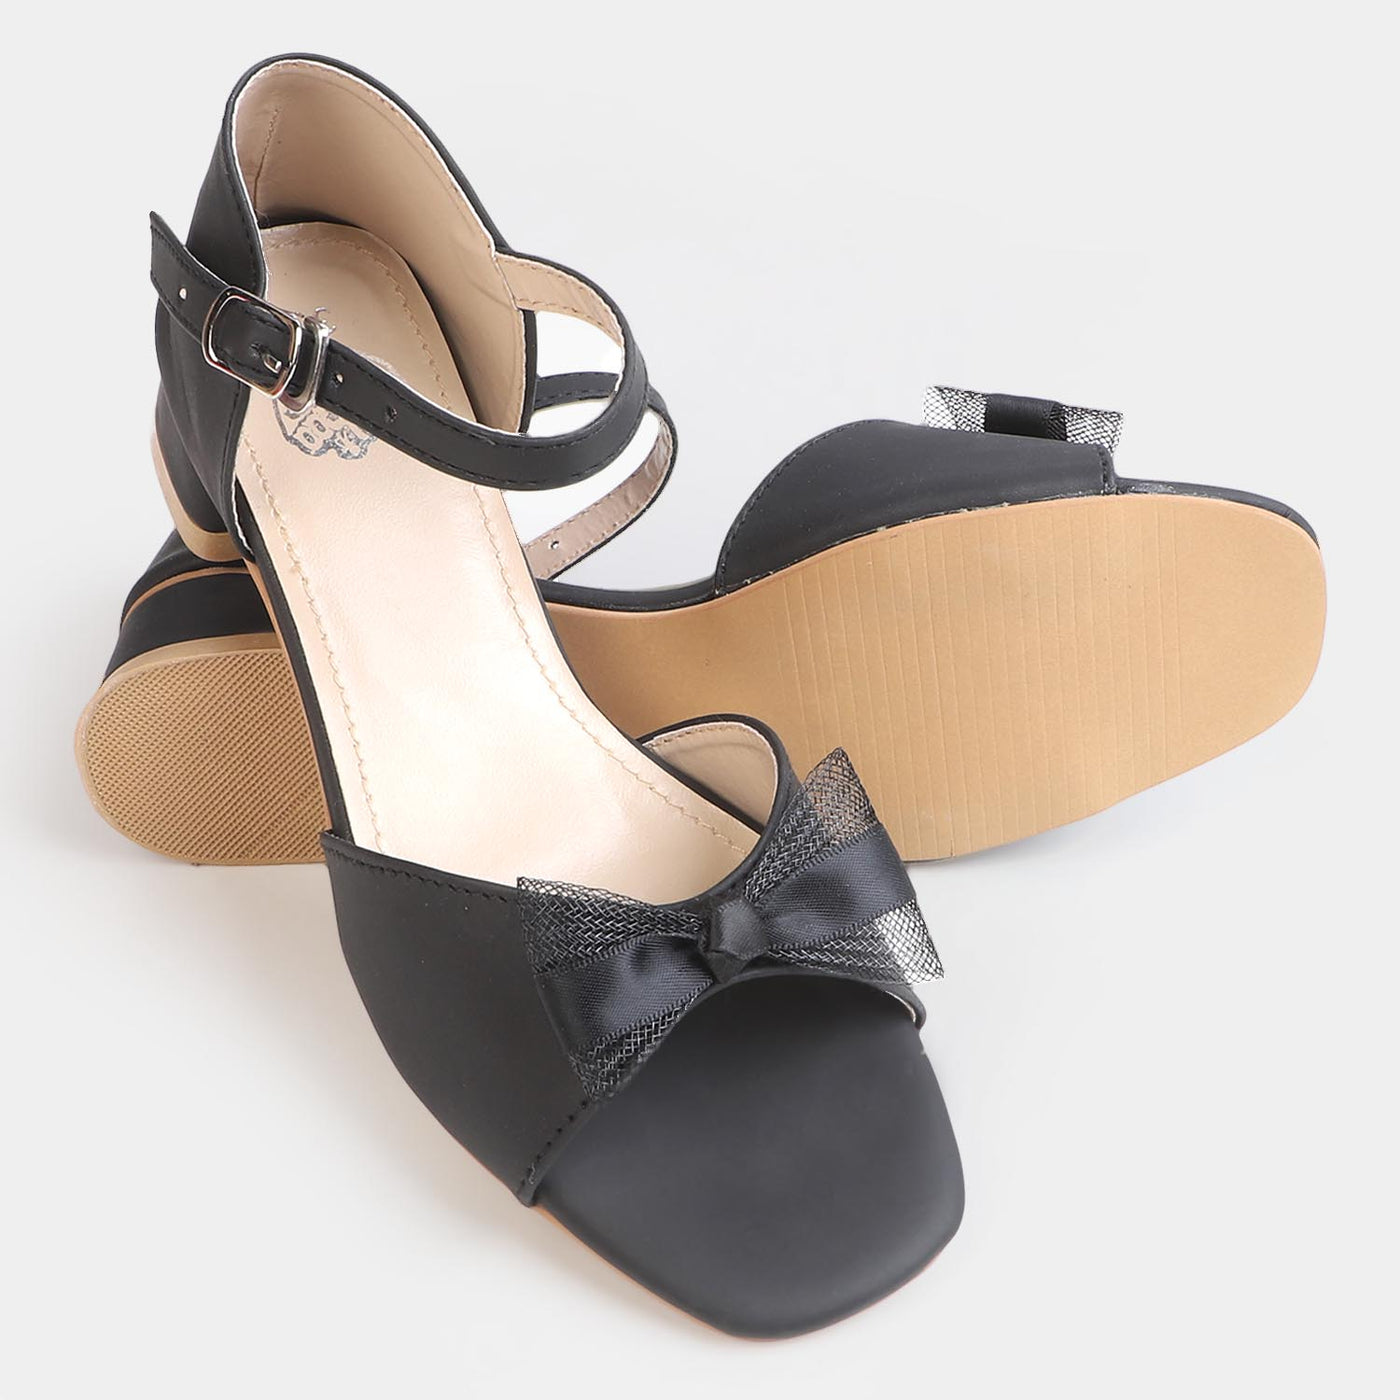 Girls Sandal Heels SD-12-BLACK